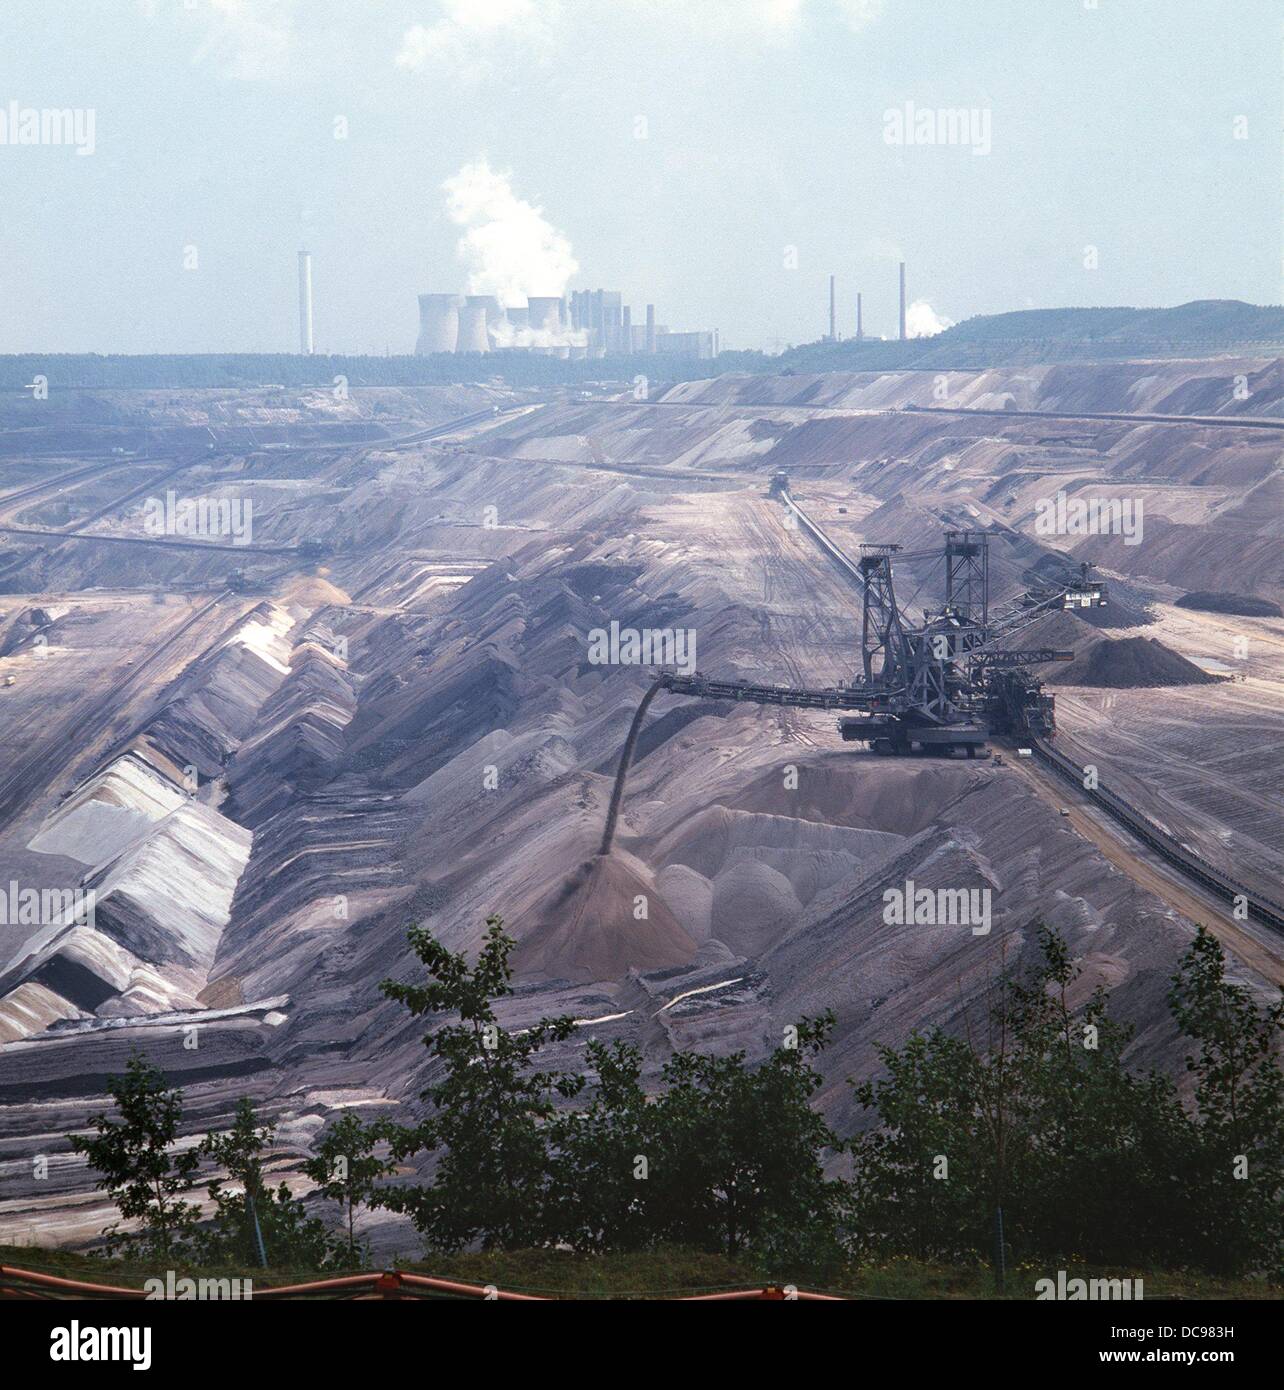 L'exploitation minière à ciel ouvert de lignite dans la mine Fortuna entre Cologne et Aix-la-Chapelle. Photographié en novembre 1986. Banque D'Images